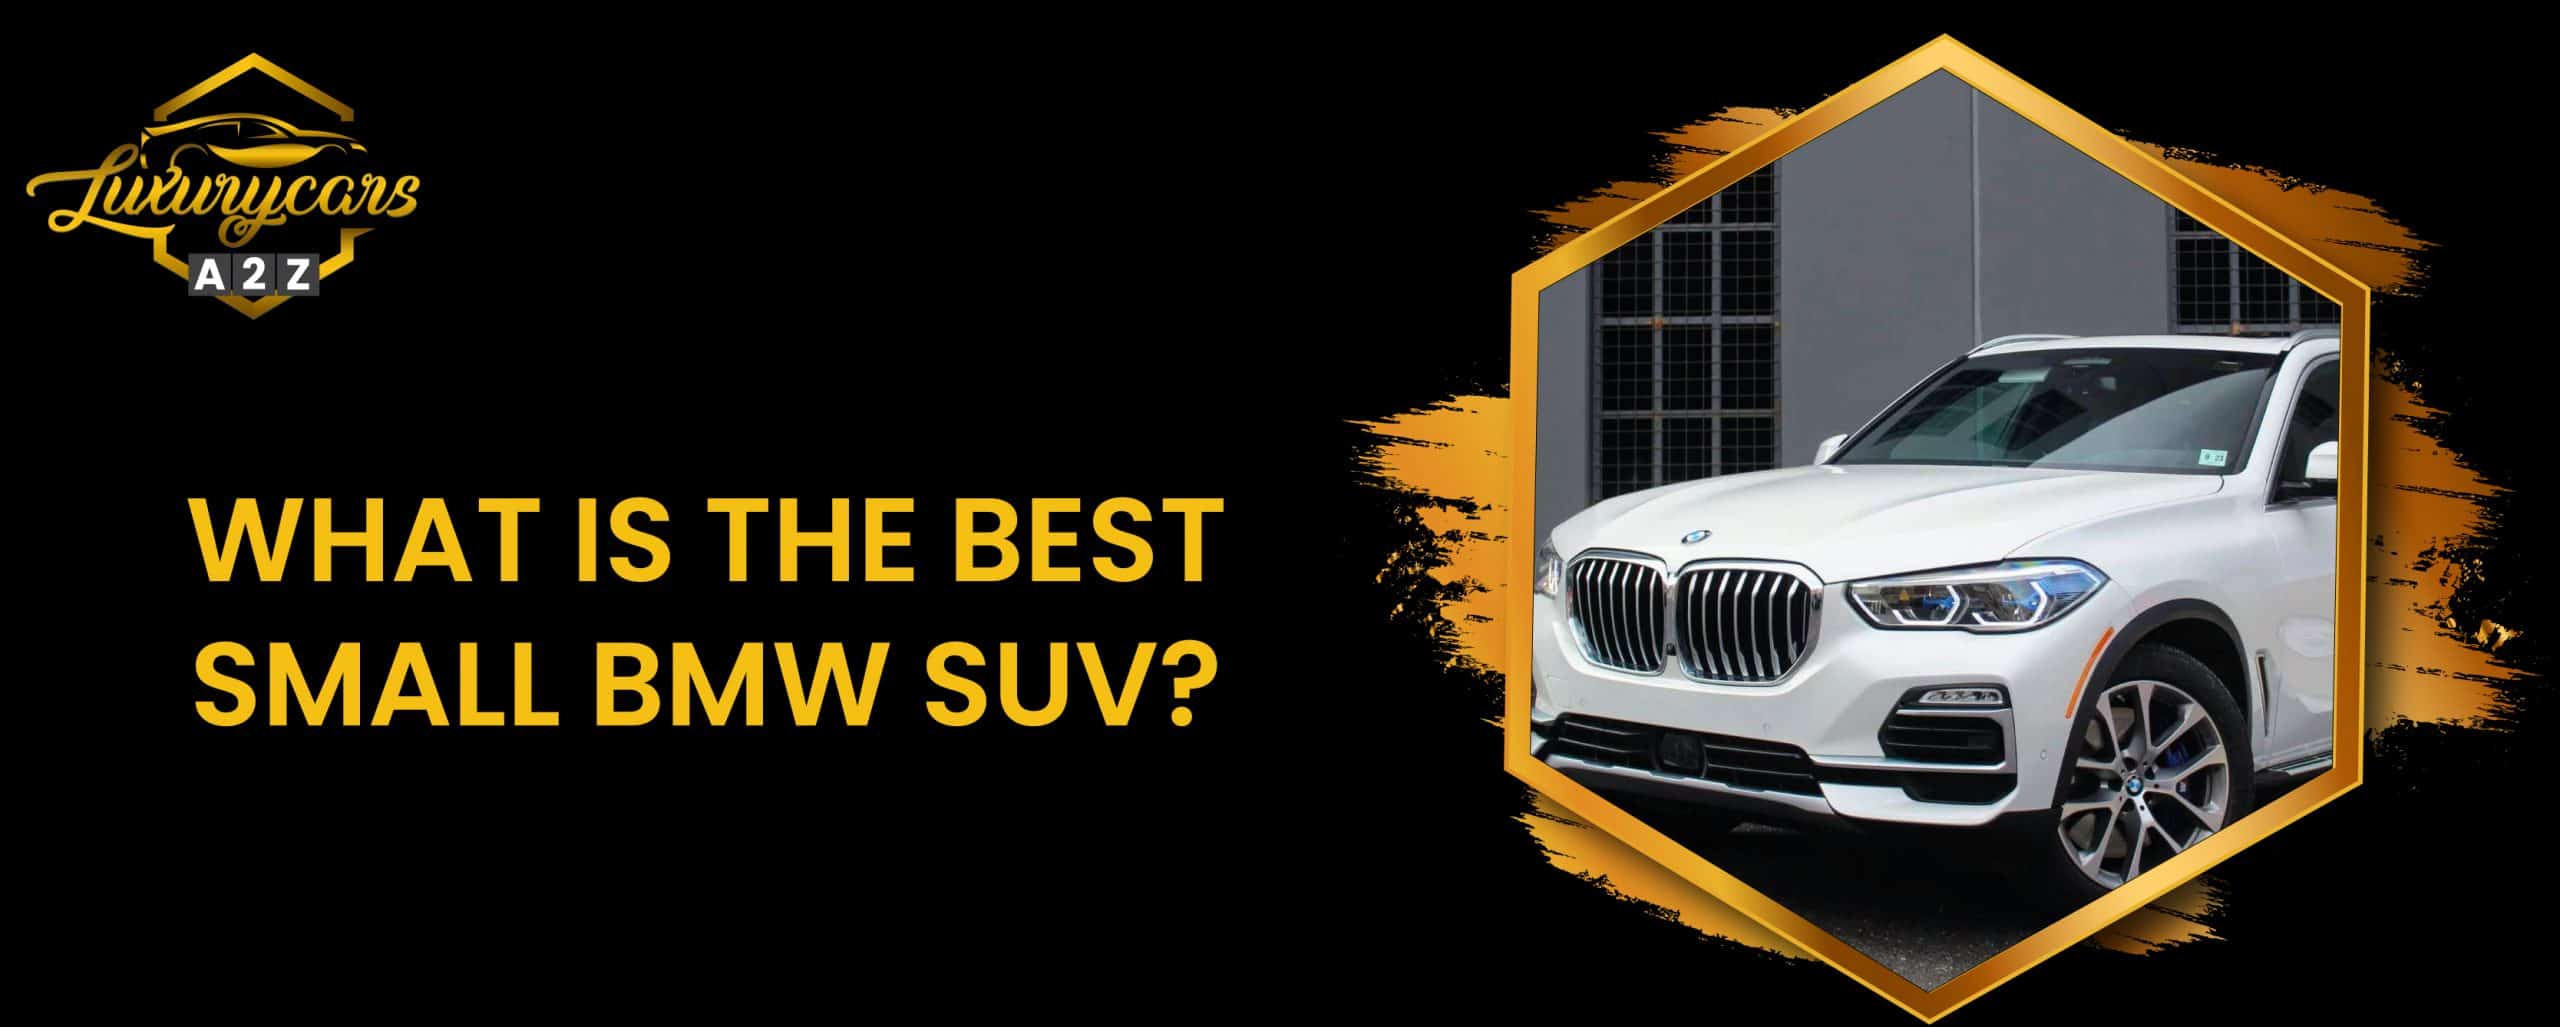 Quel est le meilleur petit VUS BMW ?